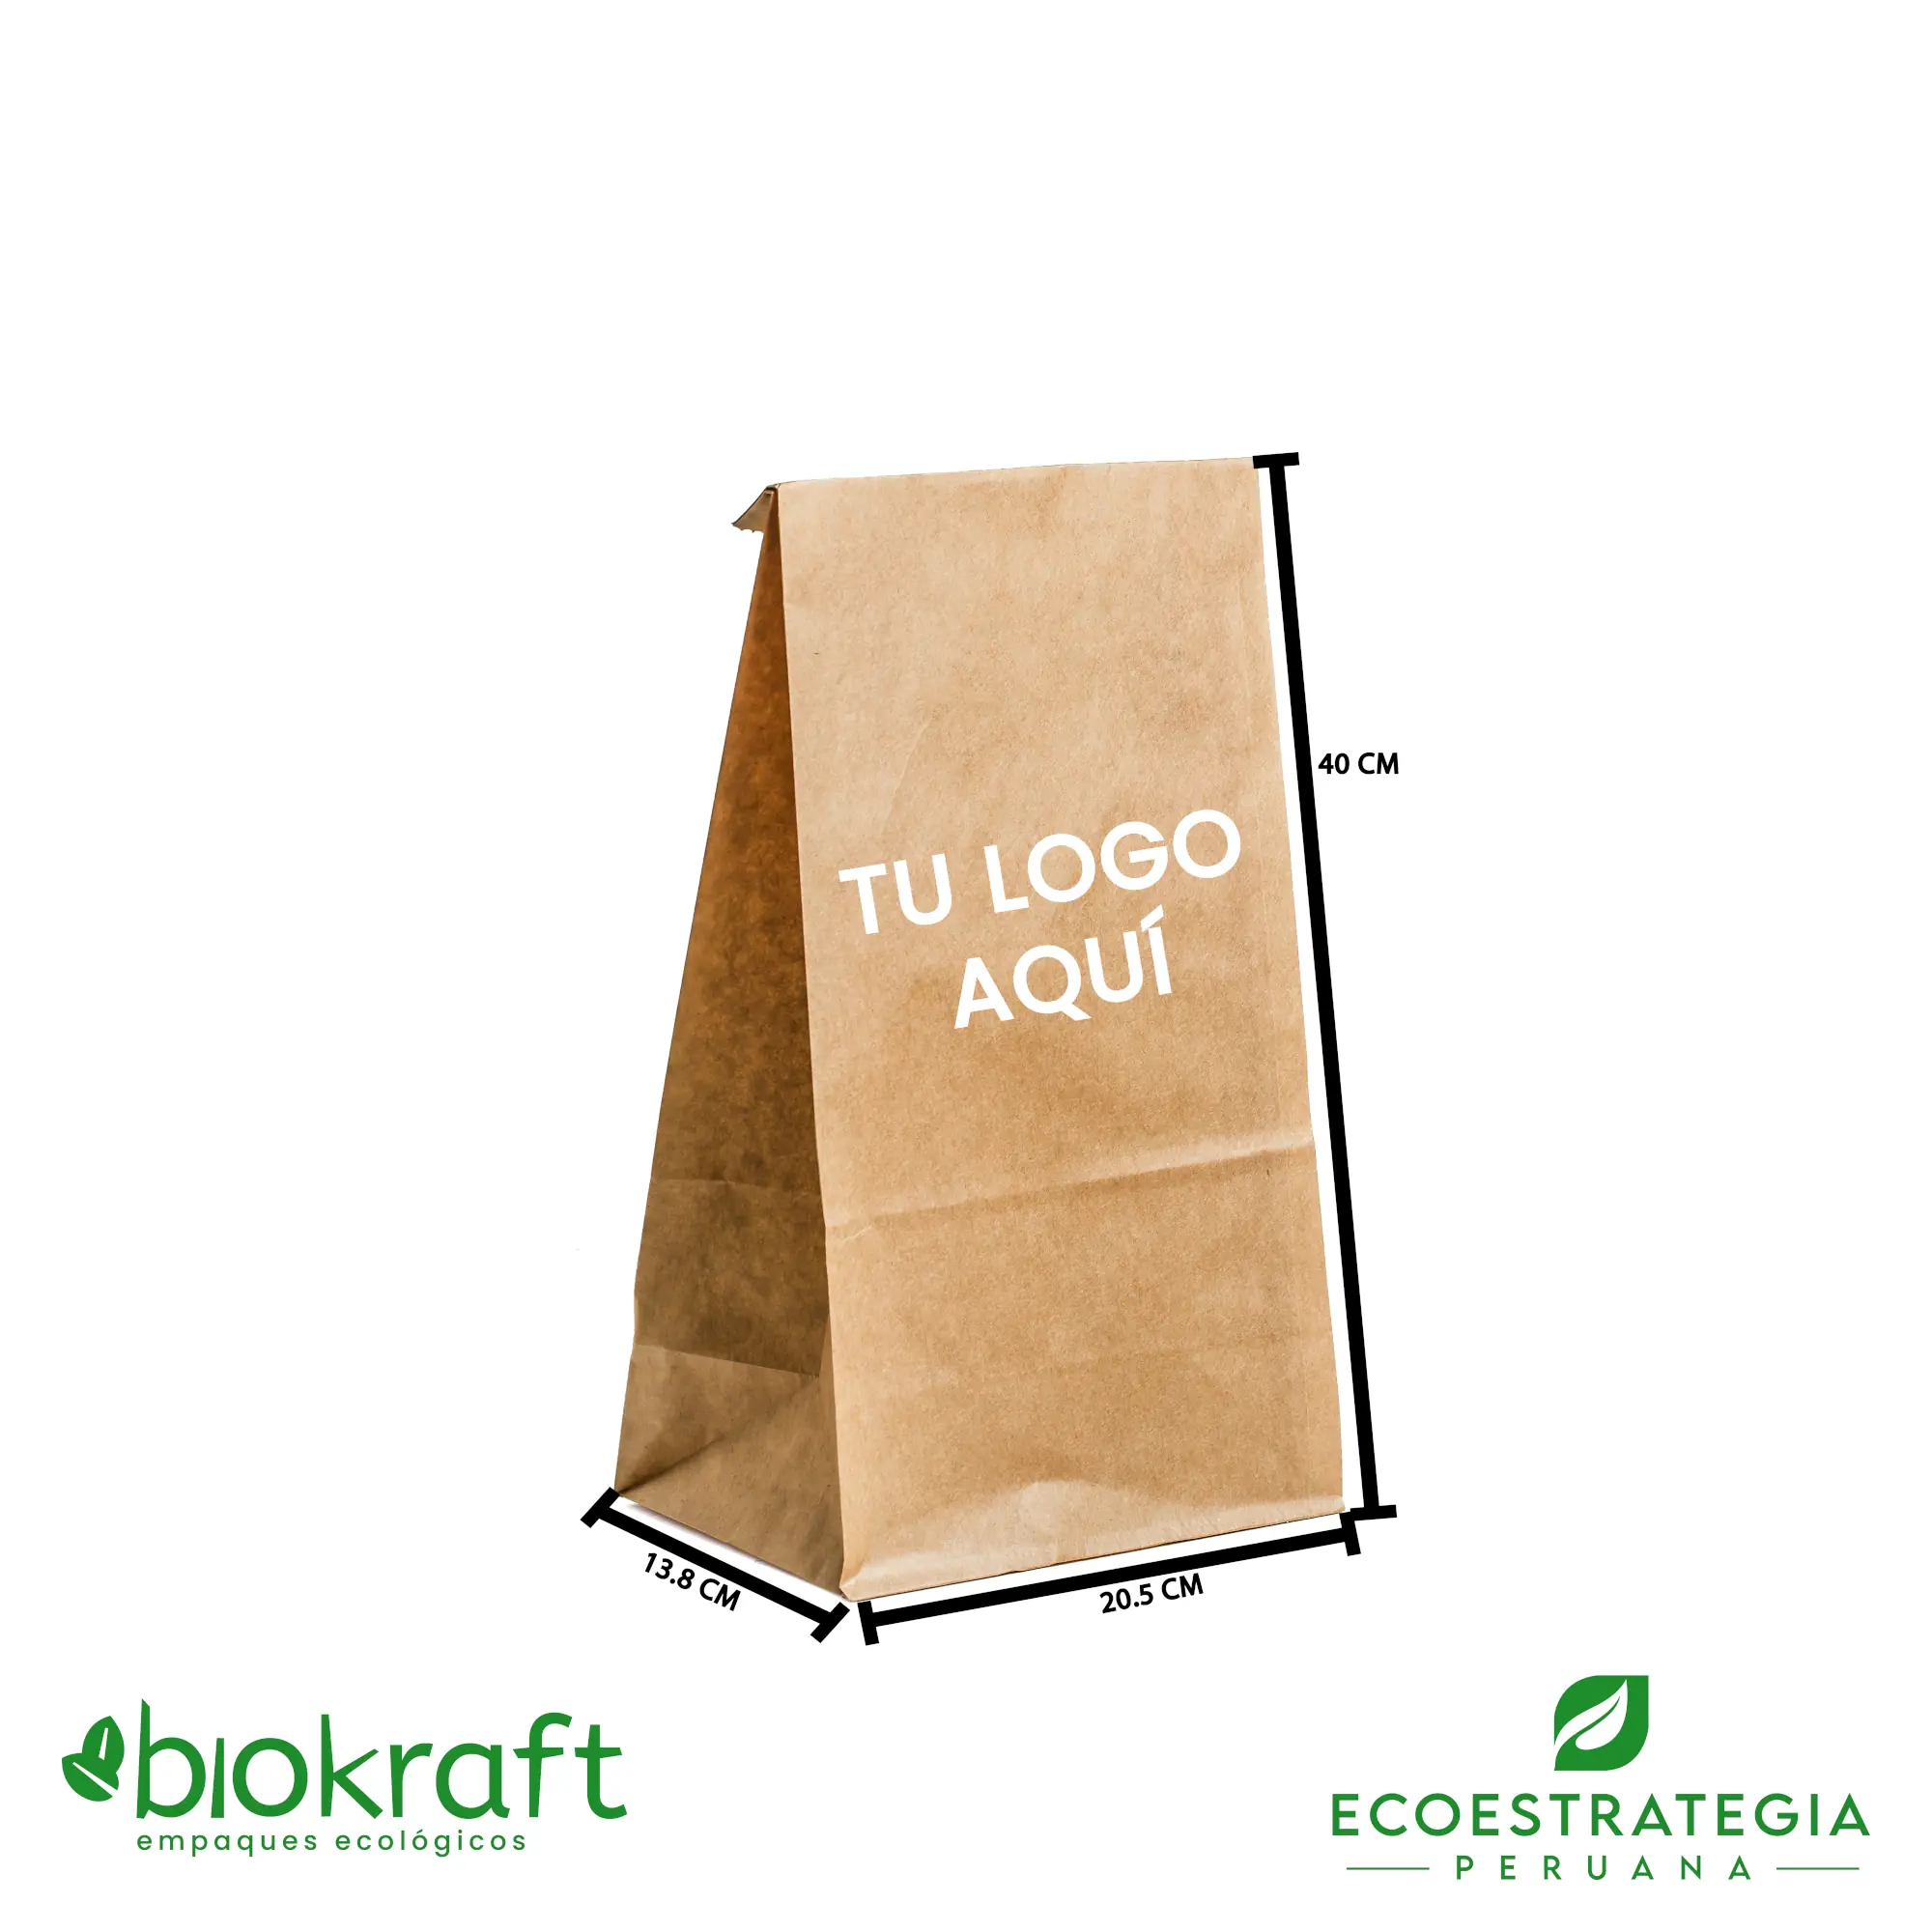 Esta bolsa de papel Kraft tiene un grosor de 60 gr y un peso de 23gr. Bolsa biodegradable de excelente gramaje y medida, ideal para comidas y productos ligeros. Cotiza ahora tus bolsas Kraft numero 25